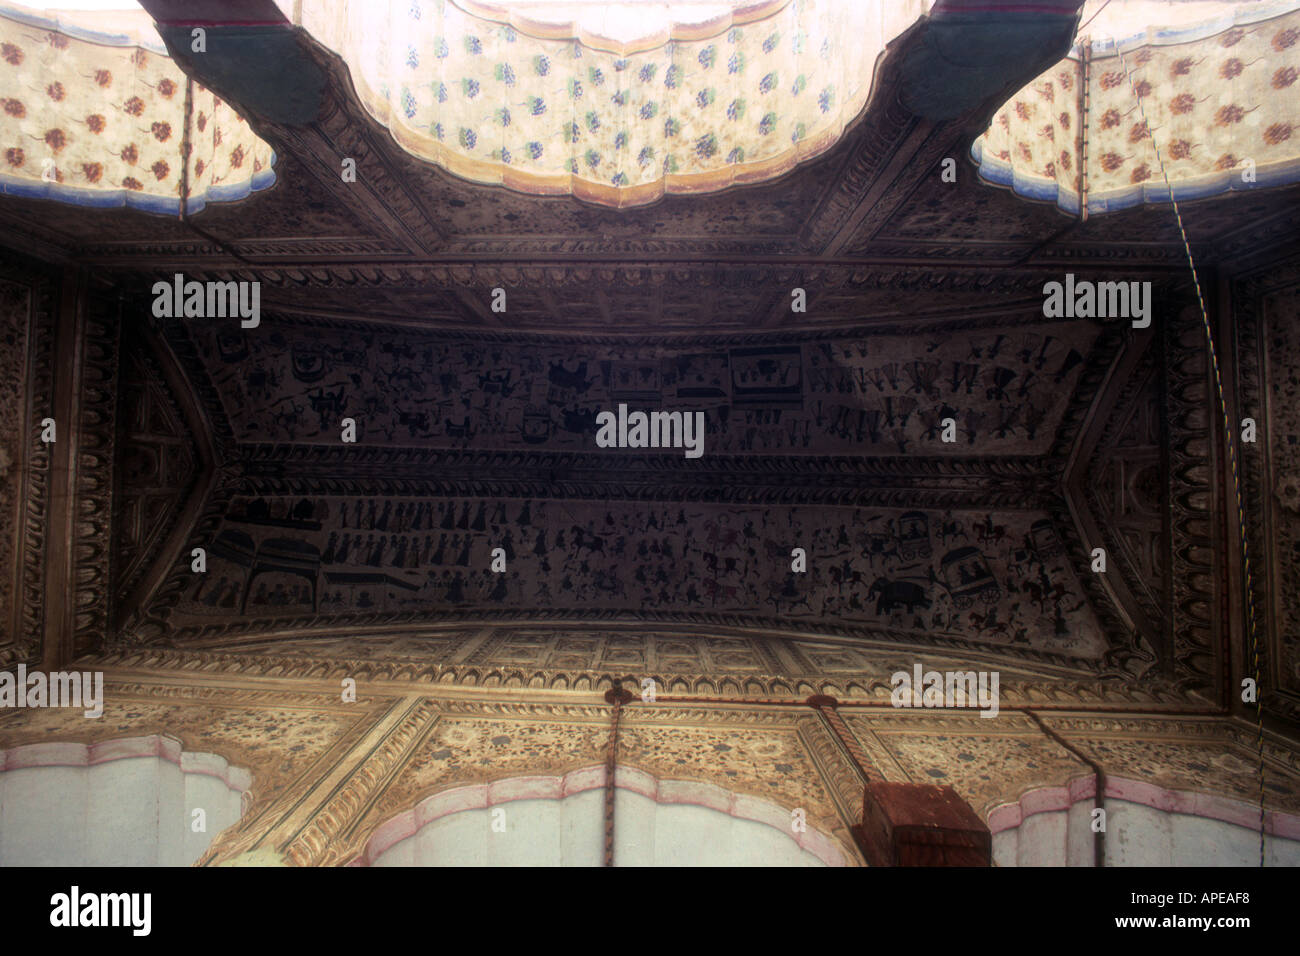 Dach-Detail Shekhawati Rajasthan Indien Stockfoto